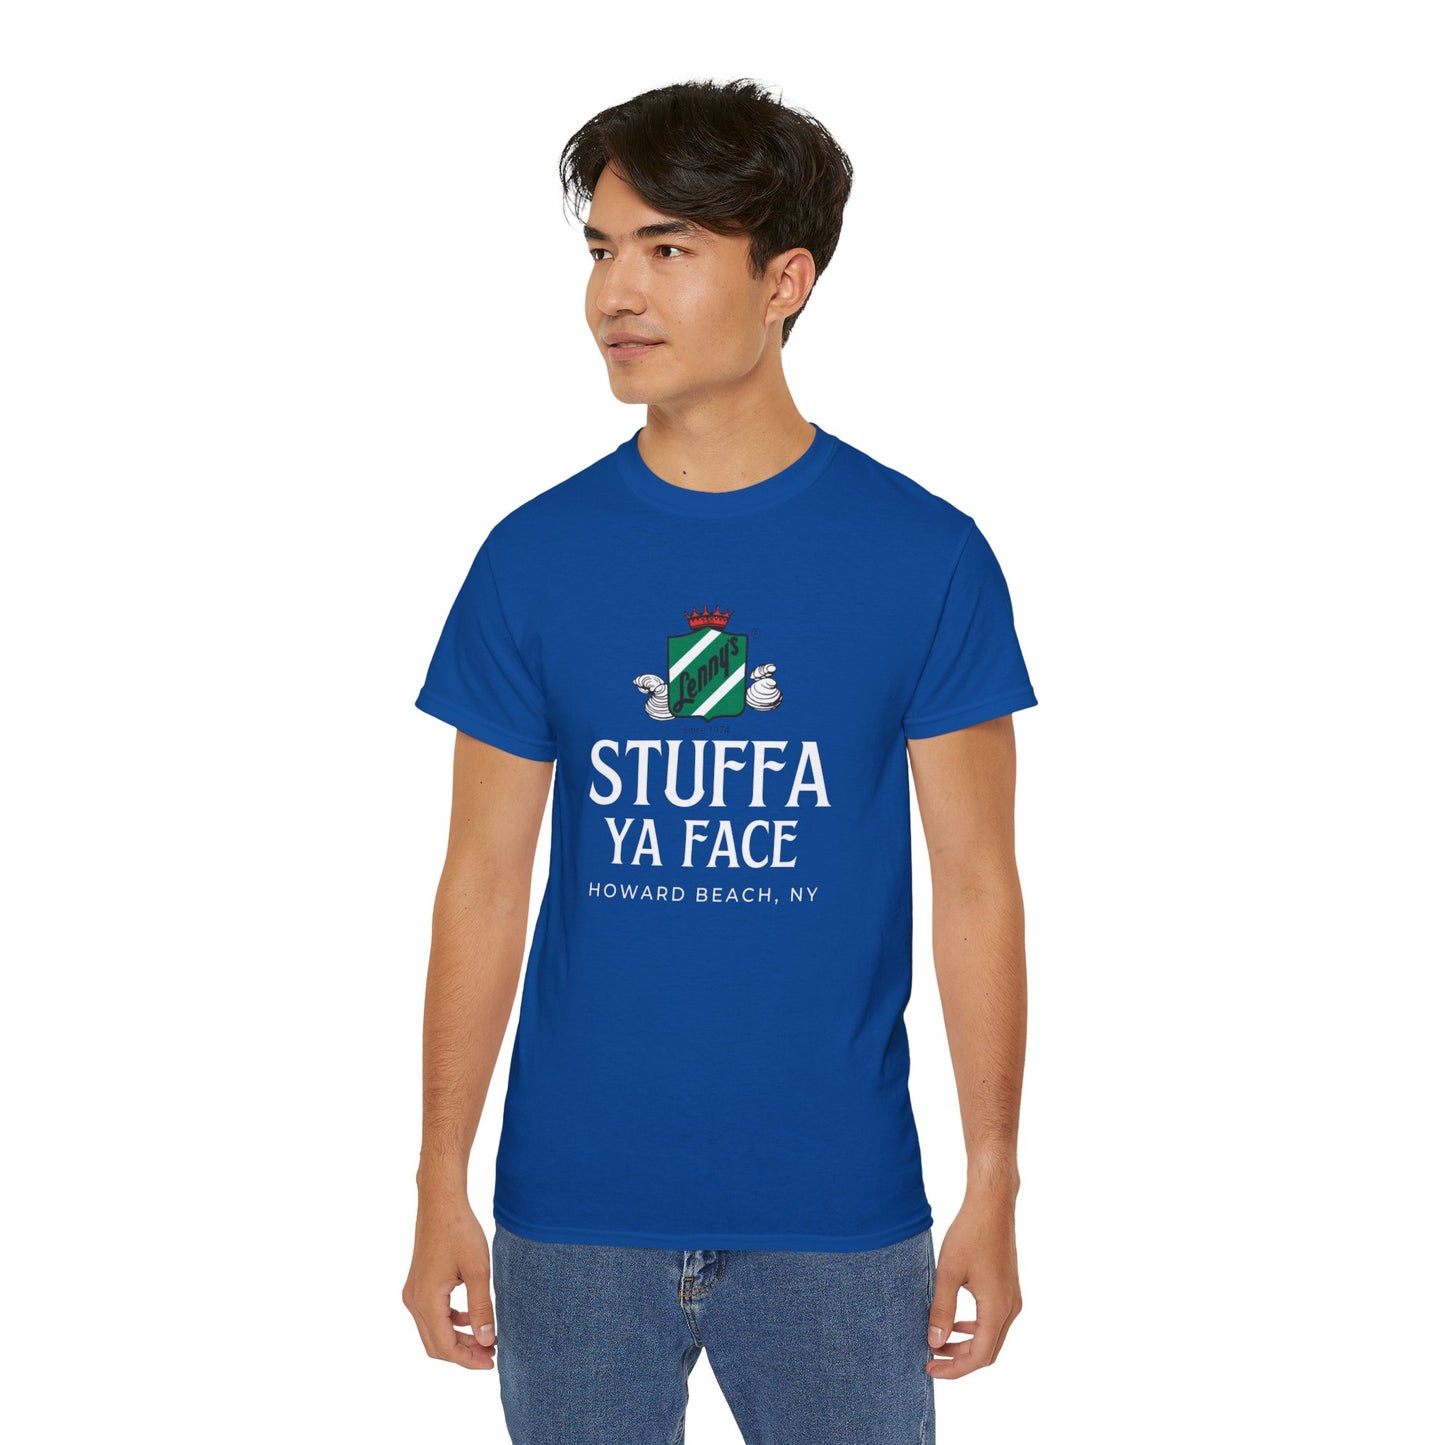 Lenny's "Stuffa ya Face" Ultra Cotton Tee